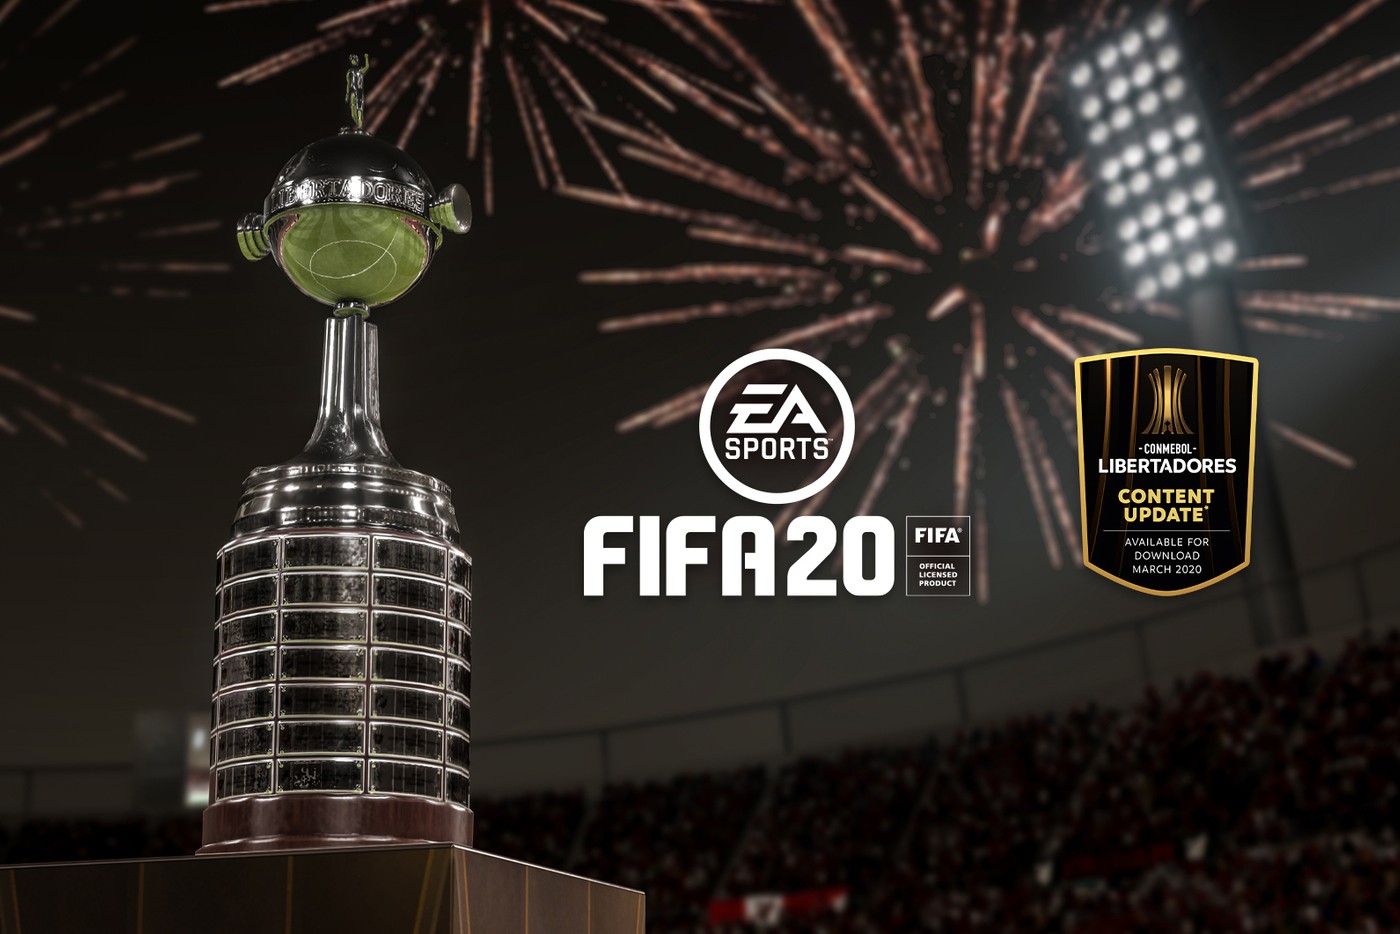 傲世皇朝APP下载平台 “FIFA 20”增加了南美解放者足球的特色